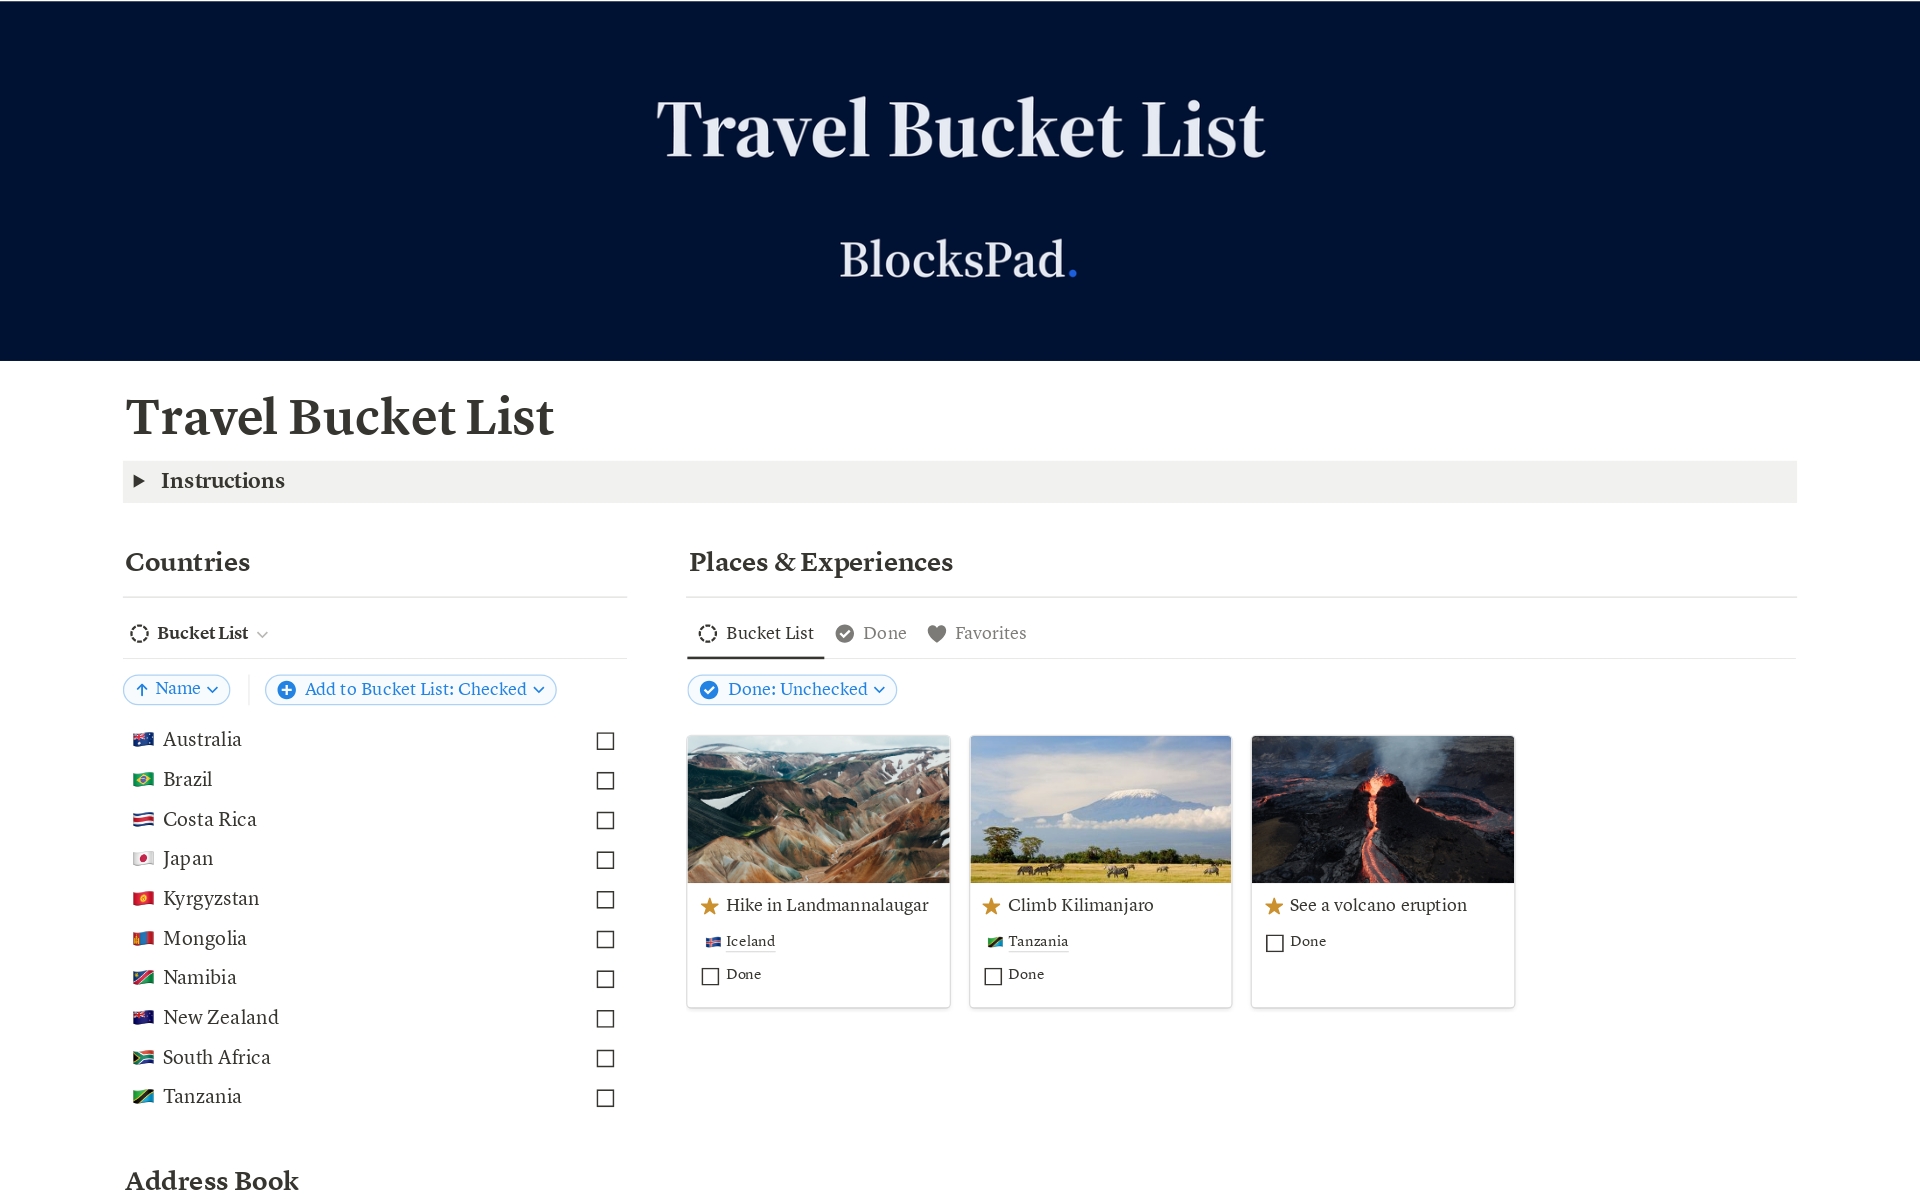 Aperçu du modèle de Travel Bucket List